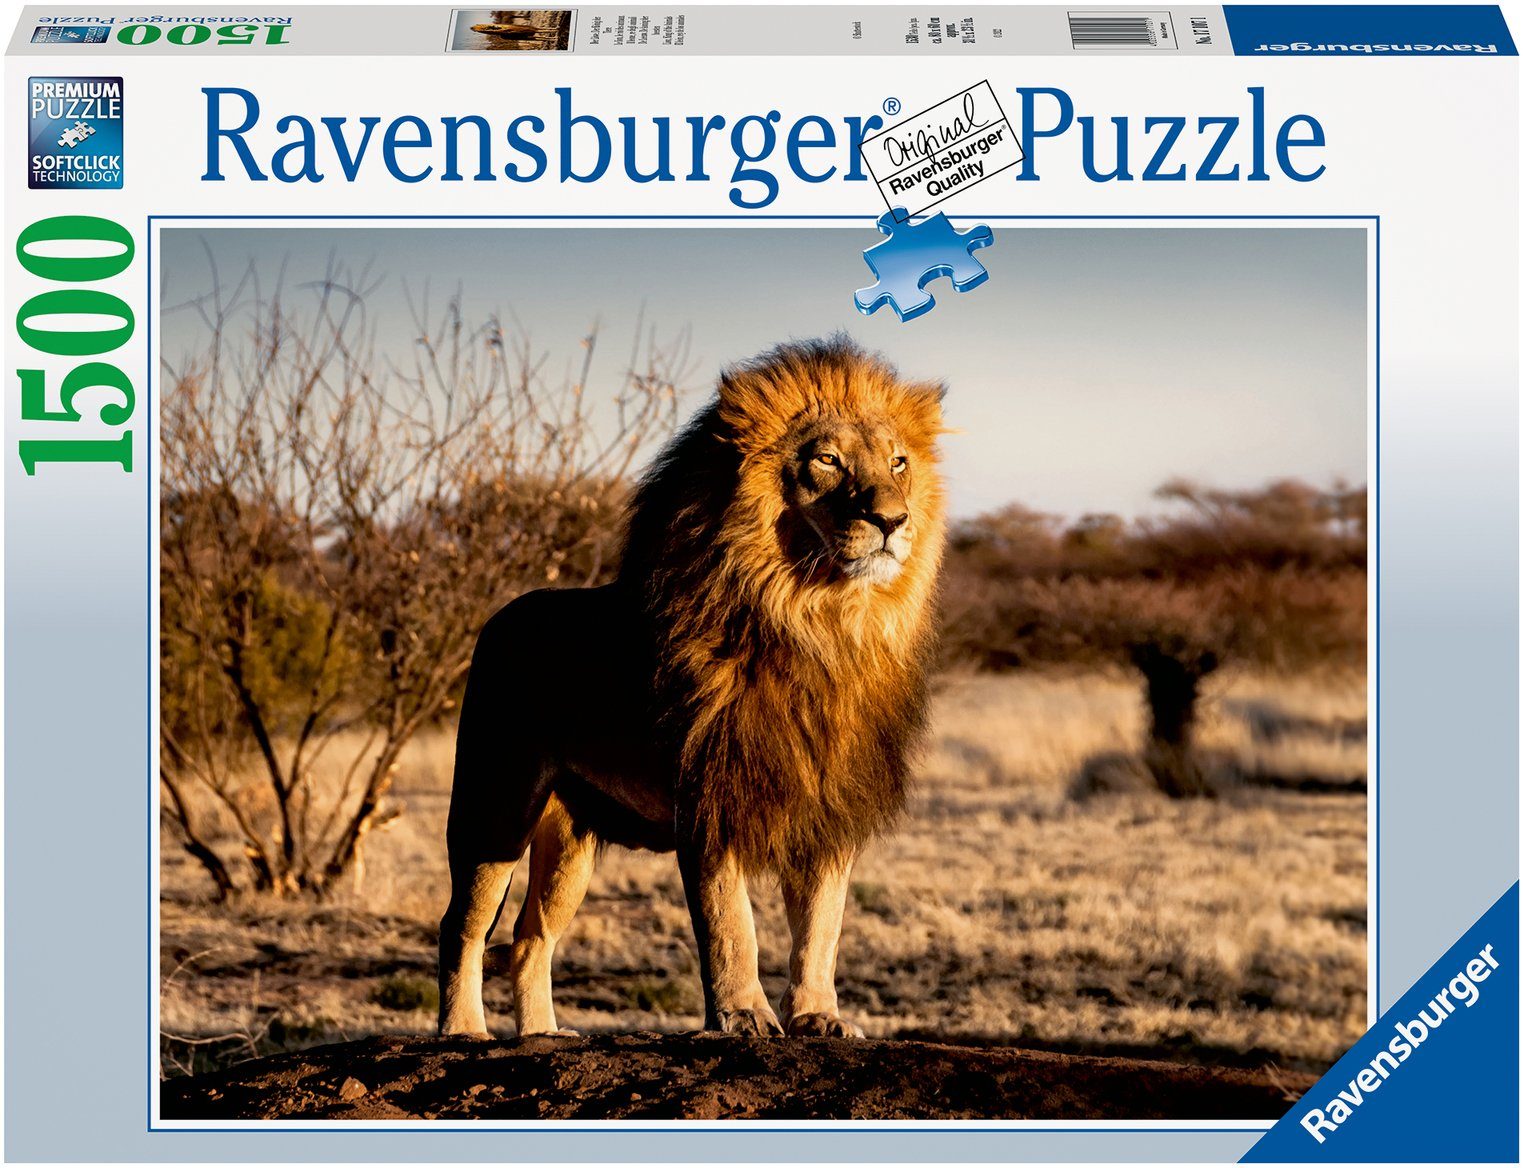 Ravensburger Puzzle Der Löwe - Der König der Tiere, 1500 Puzzleteile, Made in Germany, FSC® - schützt Wald - weltweit